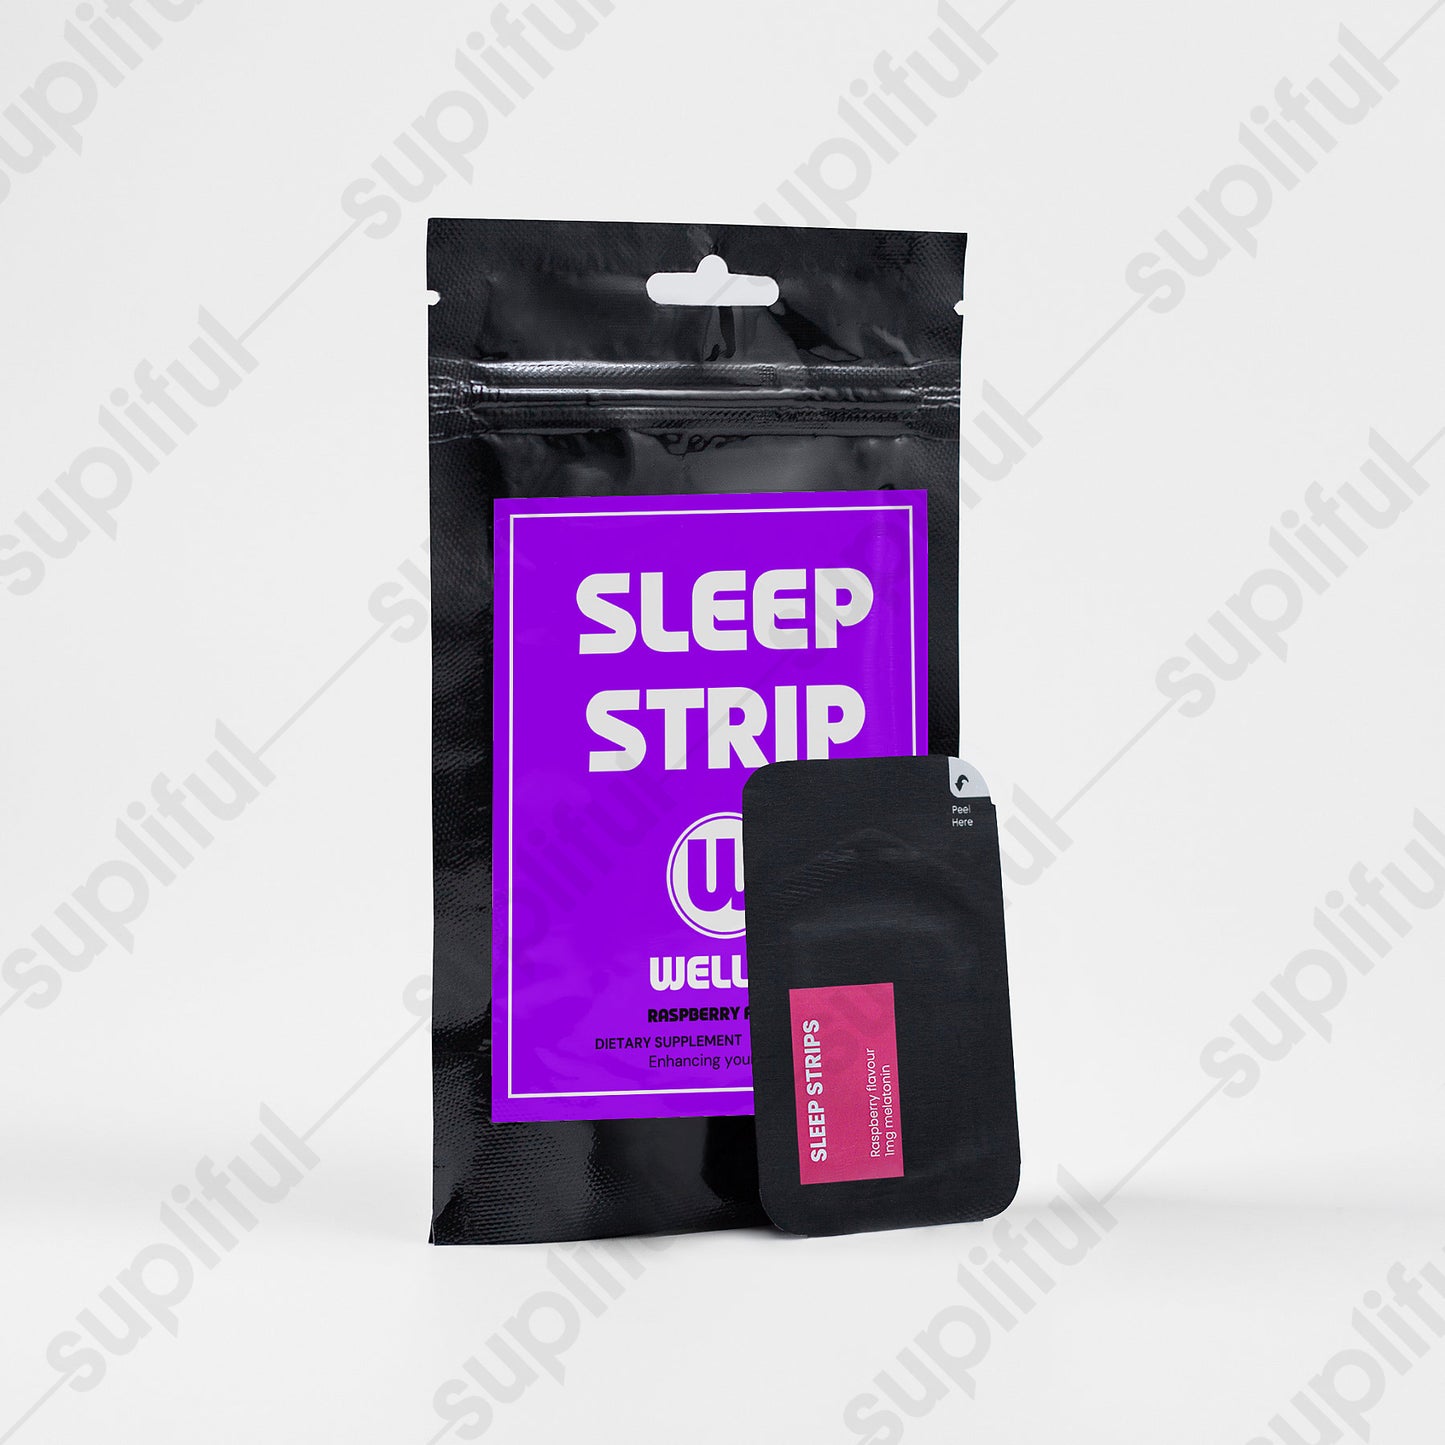 SLEEP STRIP - Enhancing your sleep